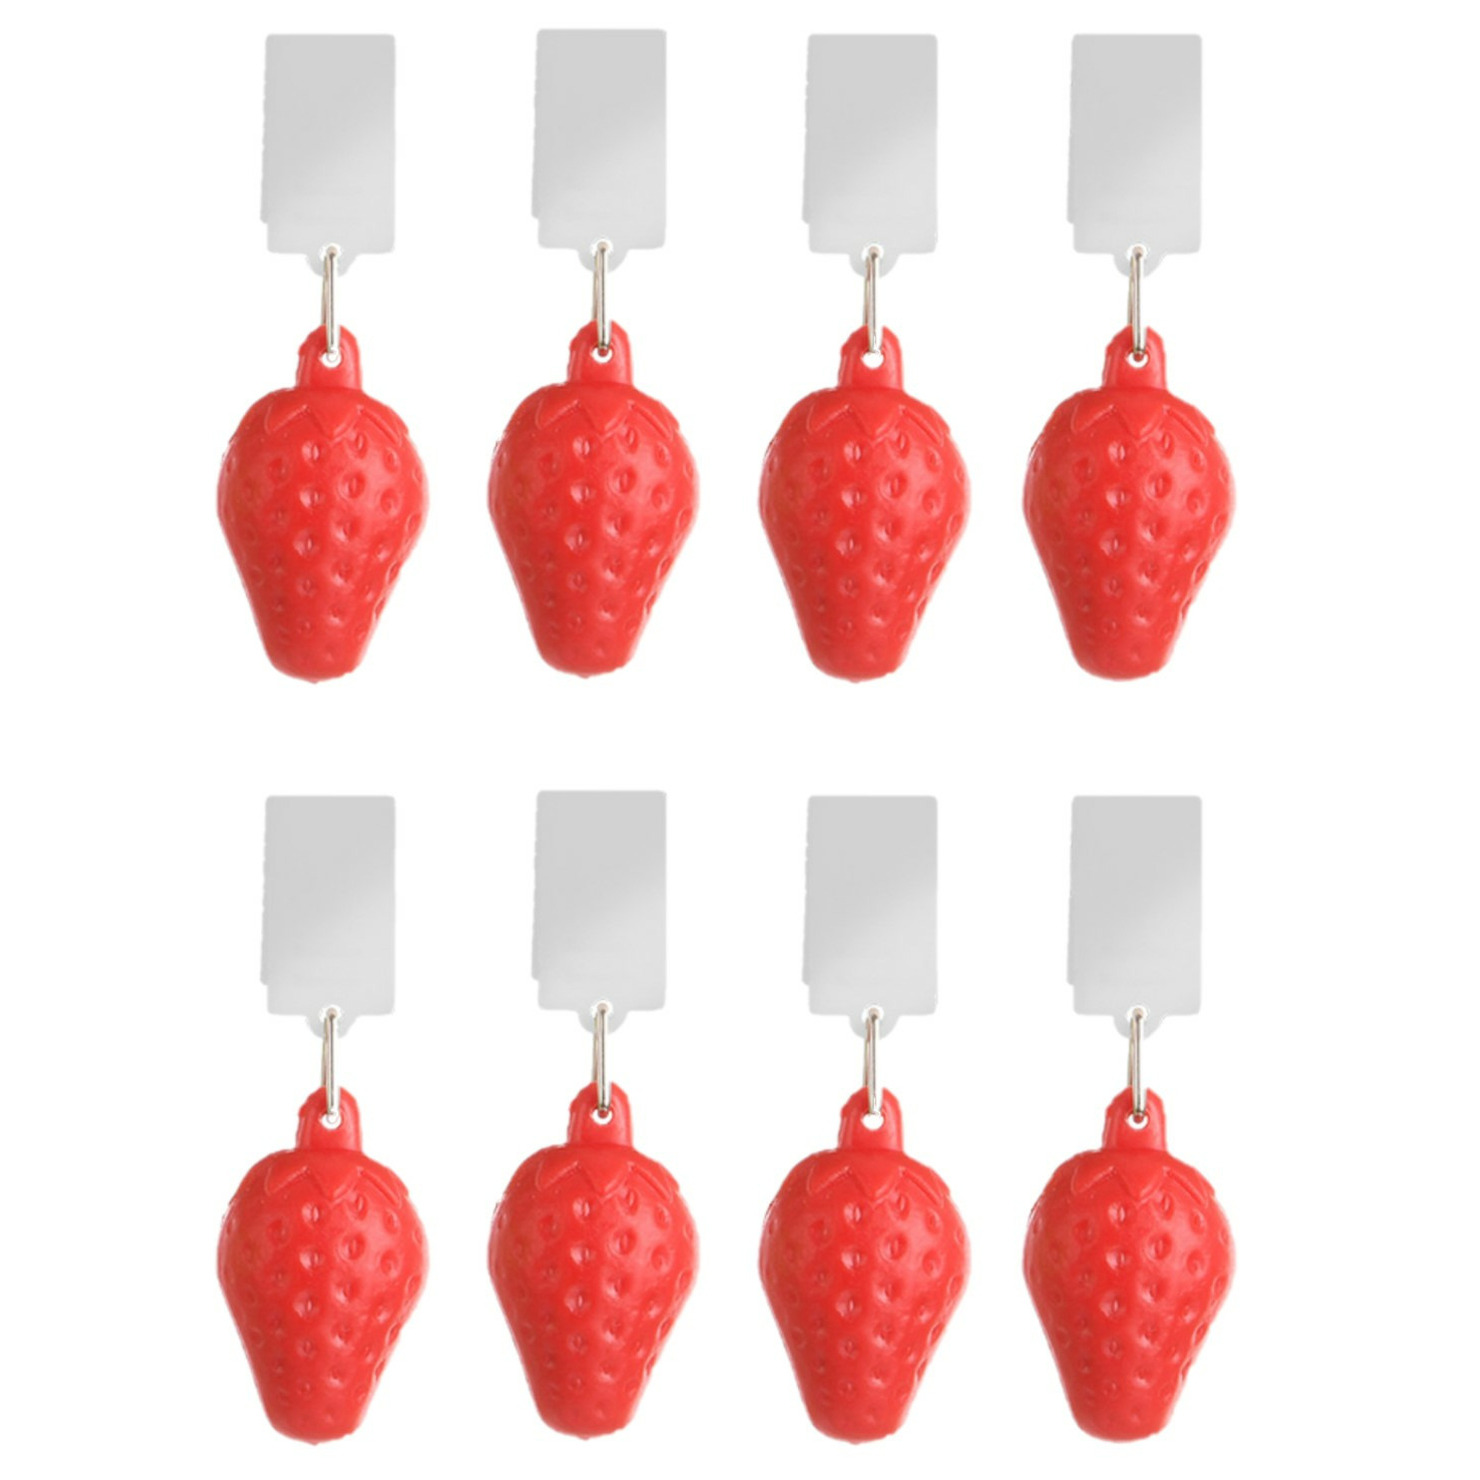 Tafelkleedgewichten aardbeien - 8x - rood - kunststof - voor tafelkleden en tafelzeilen -